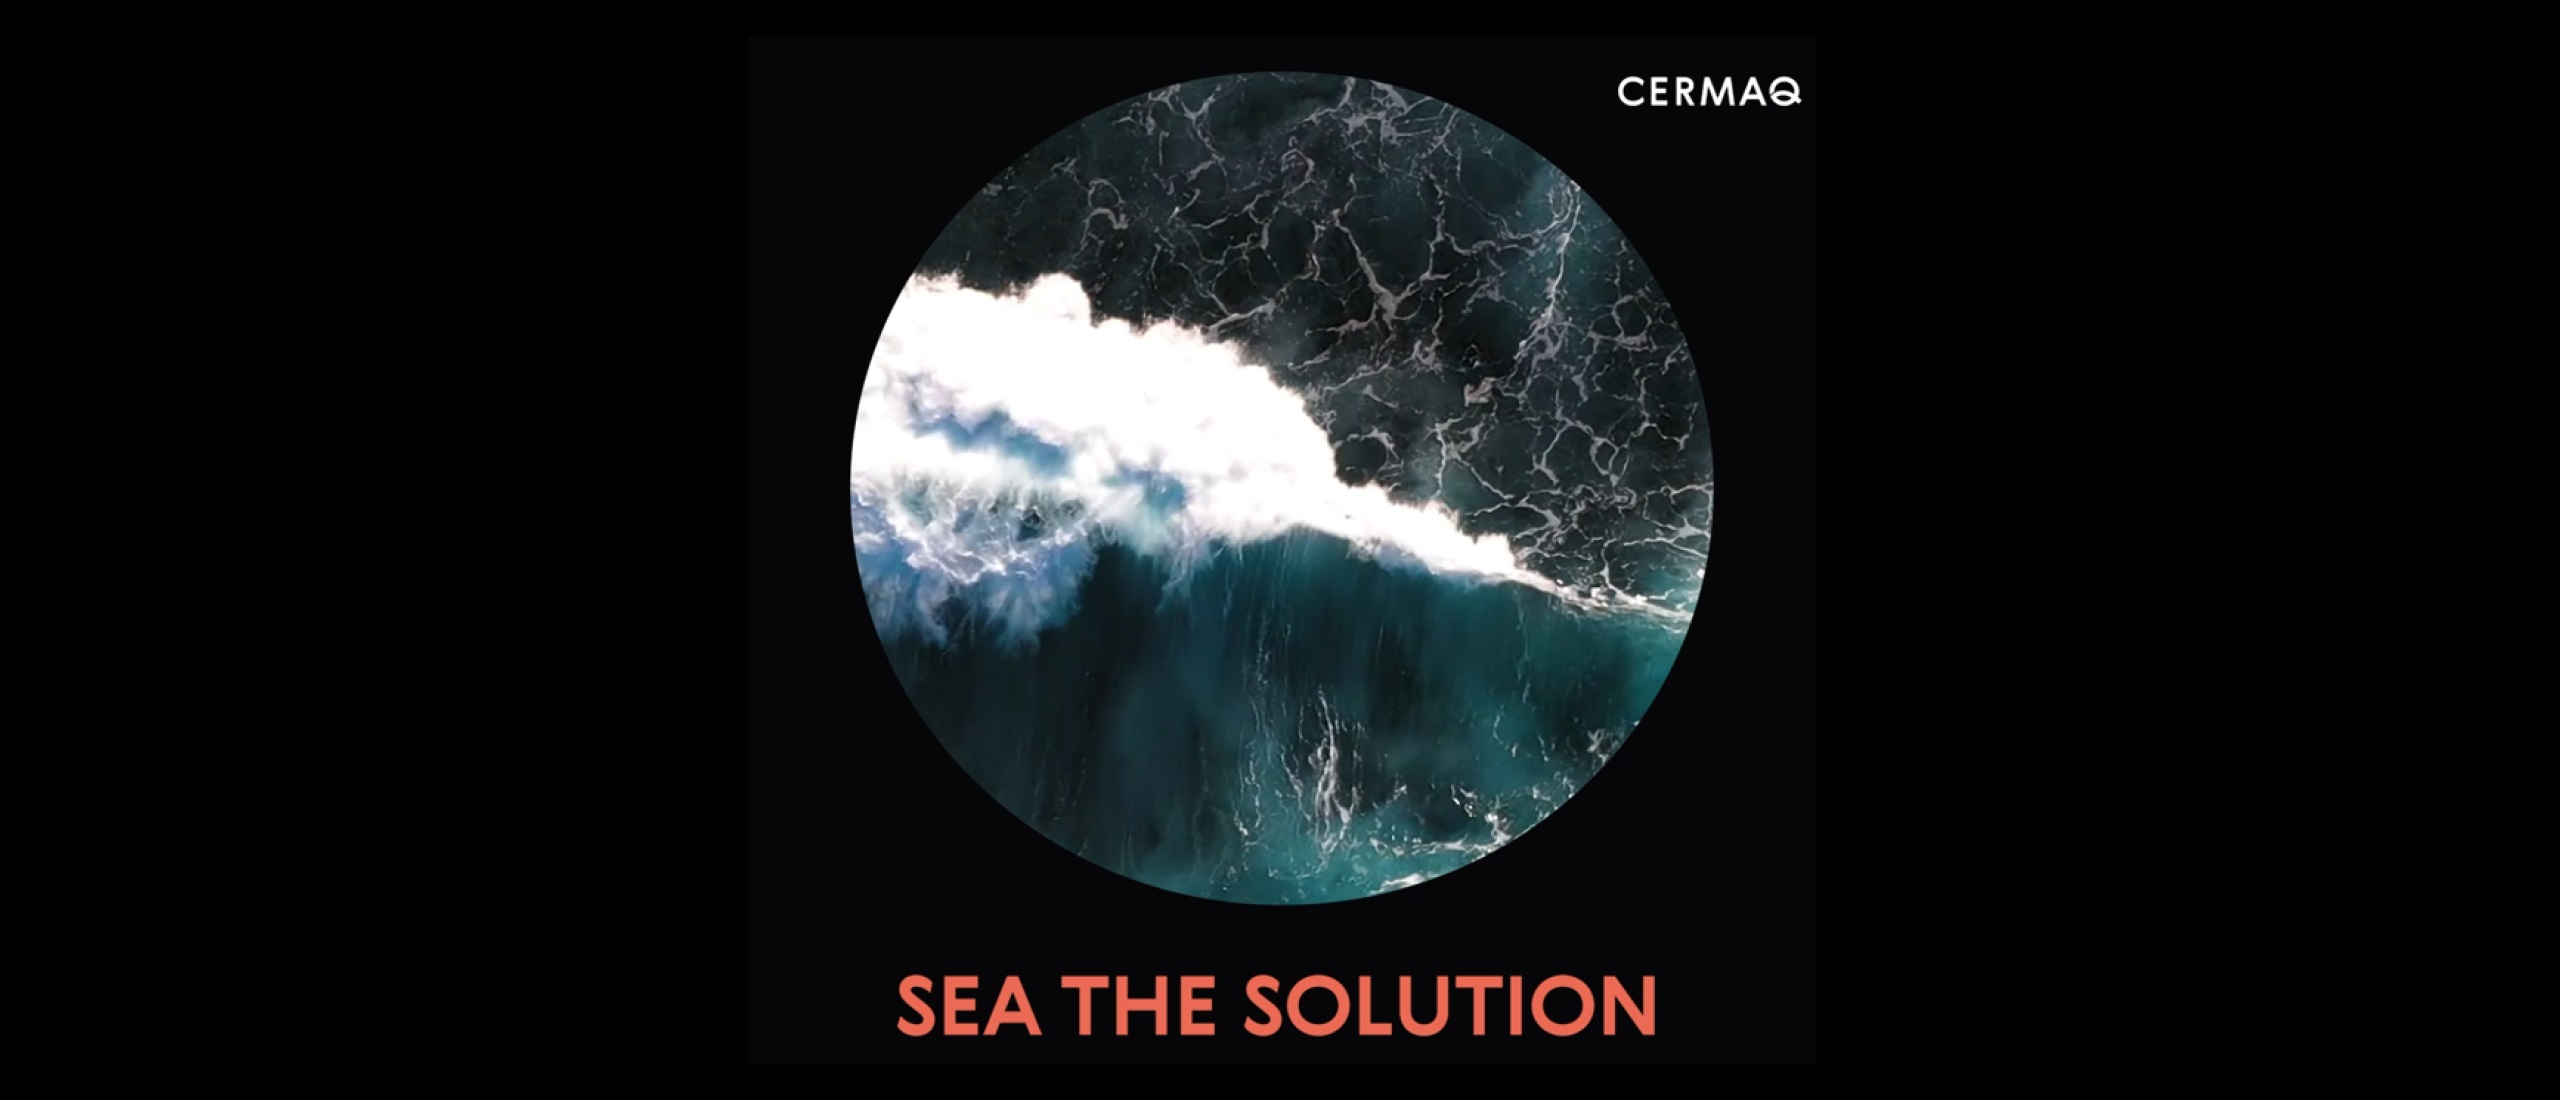 Iniciativa Sea The Solution de Cermaq aborda rol como productores de alimentos